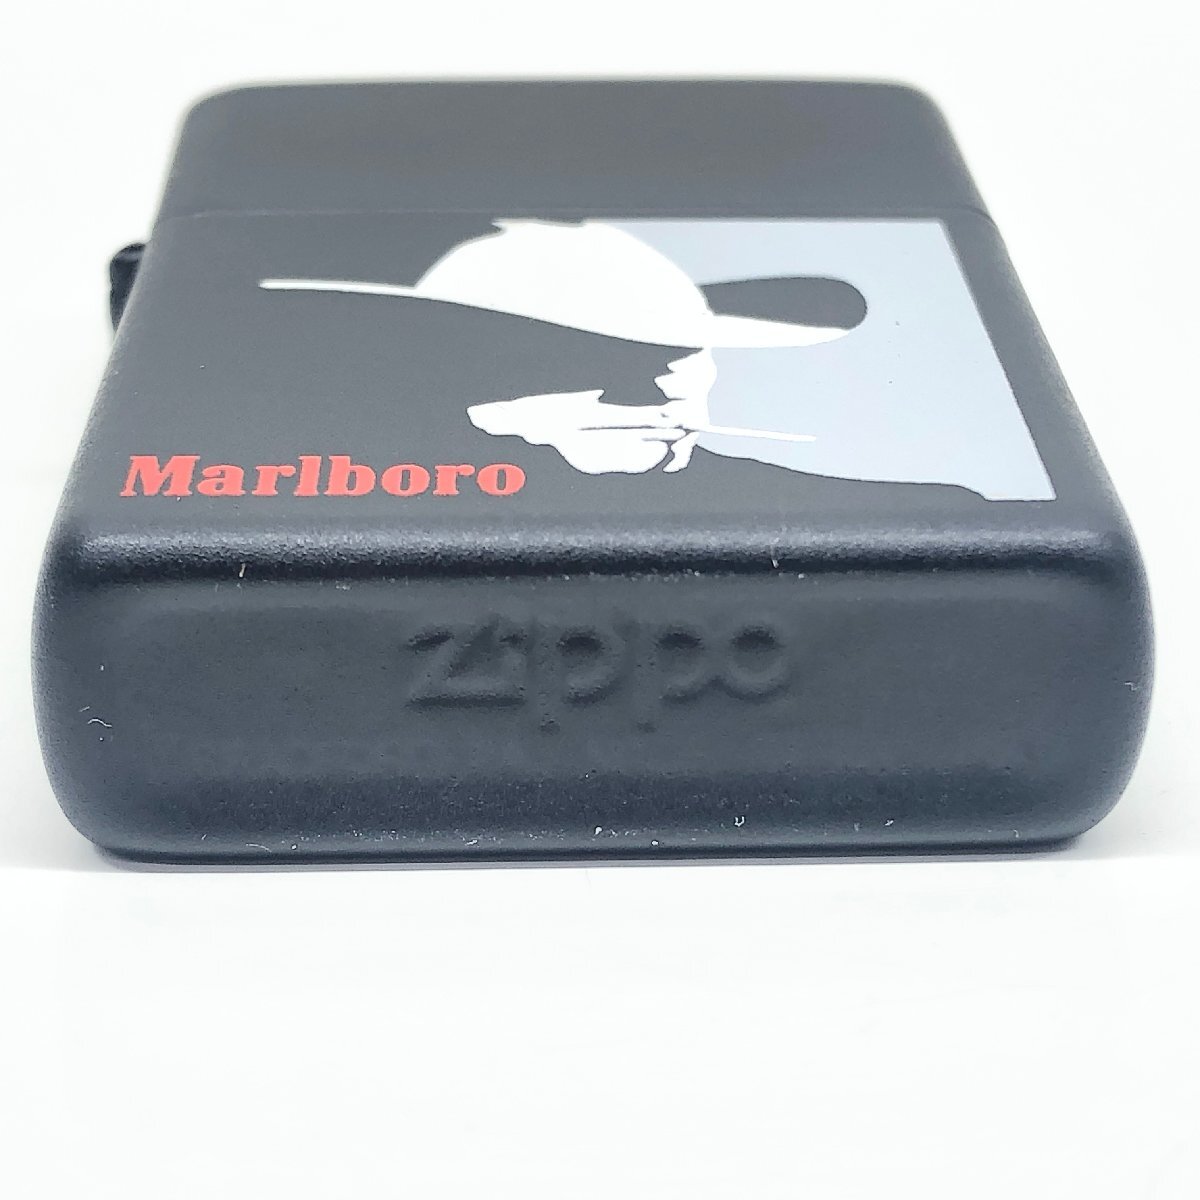 34【未使用】Marlboro マルボロ ZIPPO ジッポ オイルライター 喫煙具 喫煙グッズ  コレクション 本体のみ 動作未確認の画像6